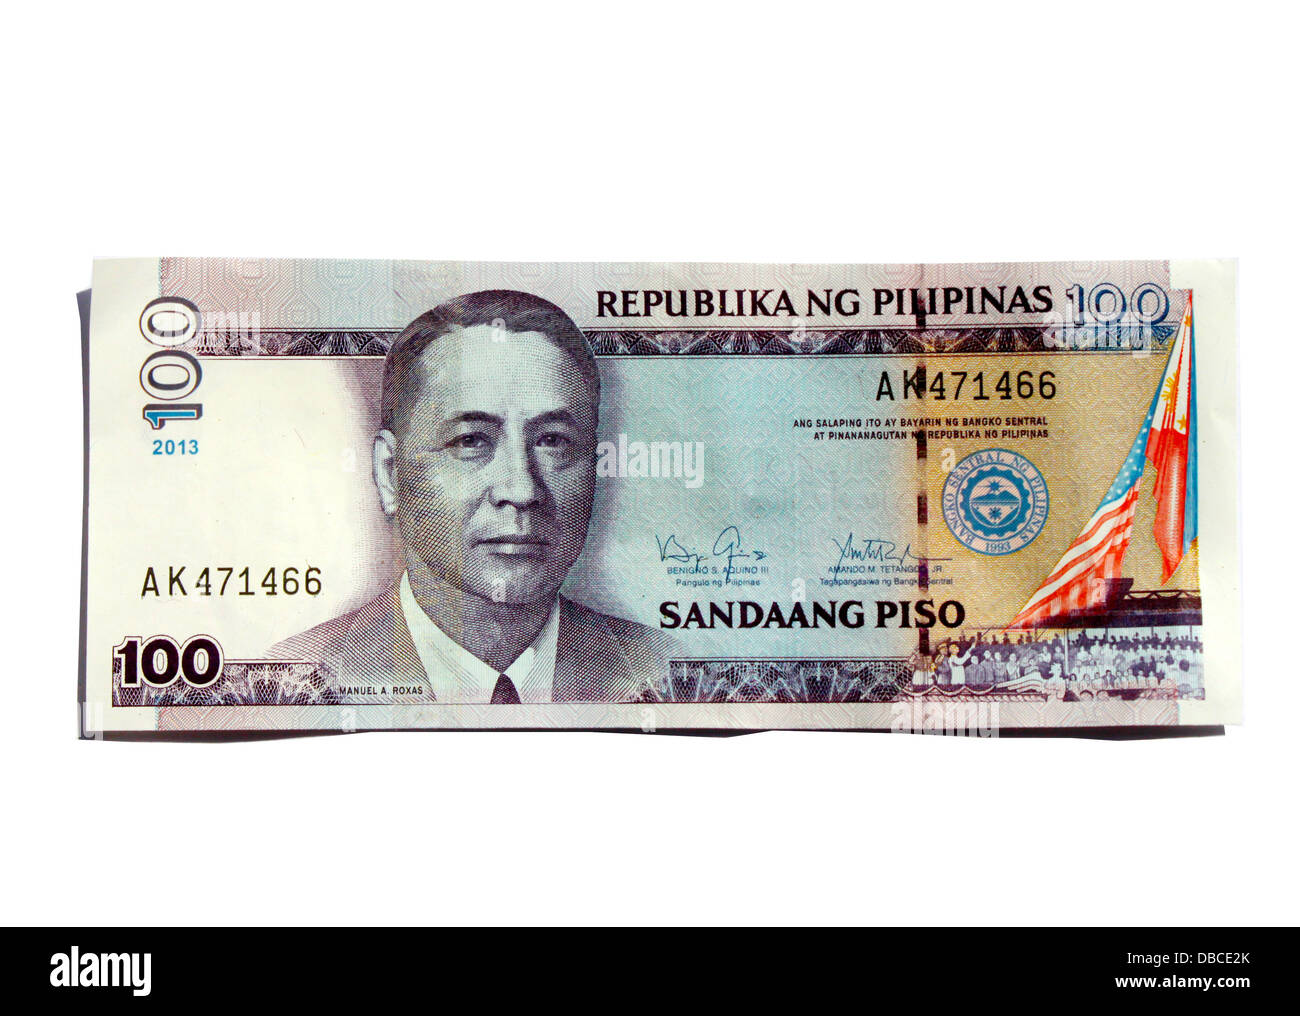 Philippine 100 peso bill Stock Photo